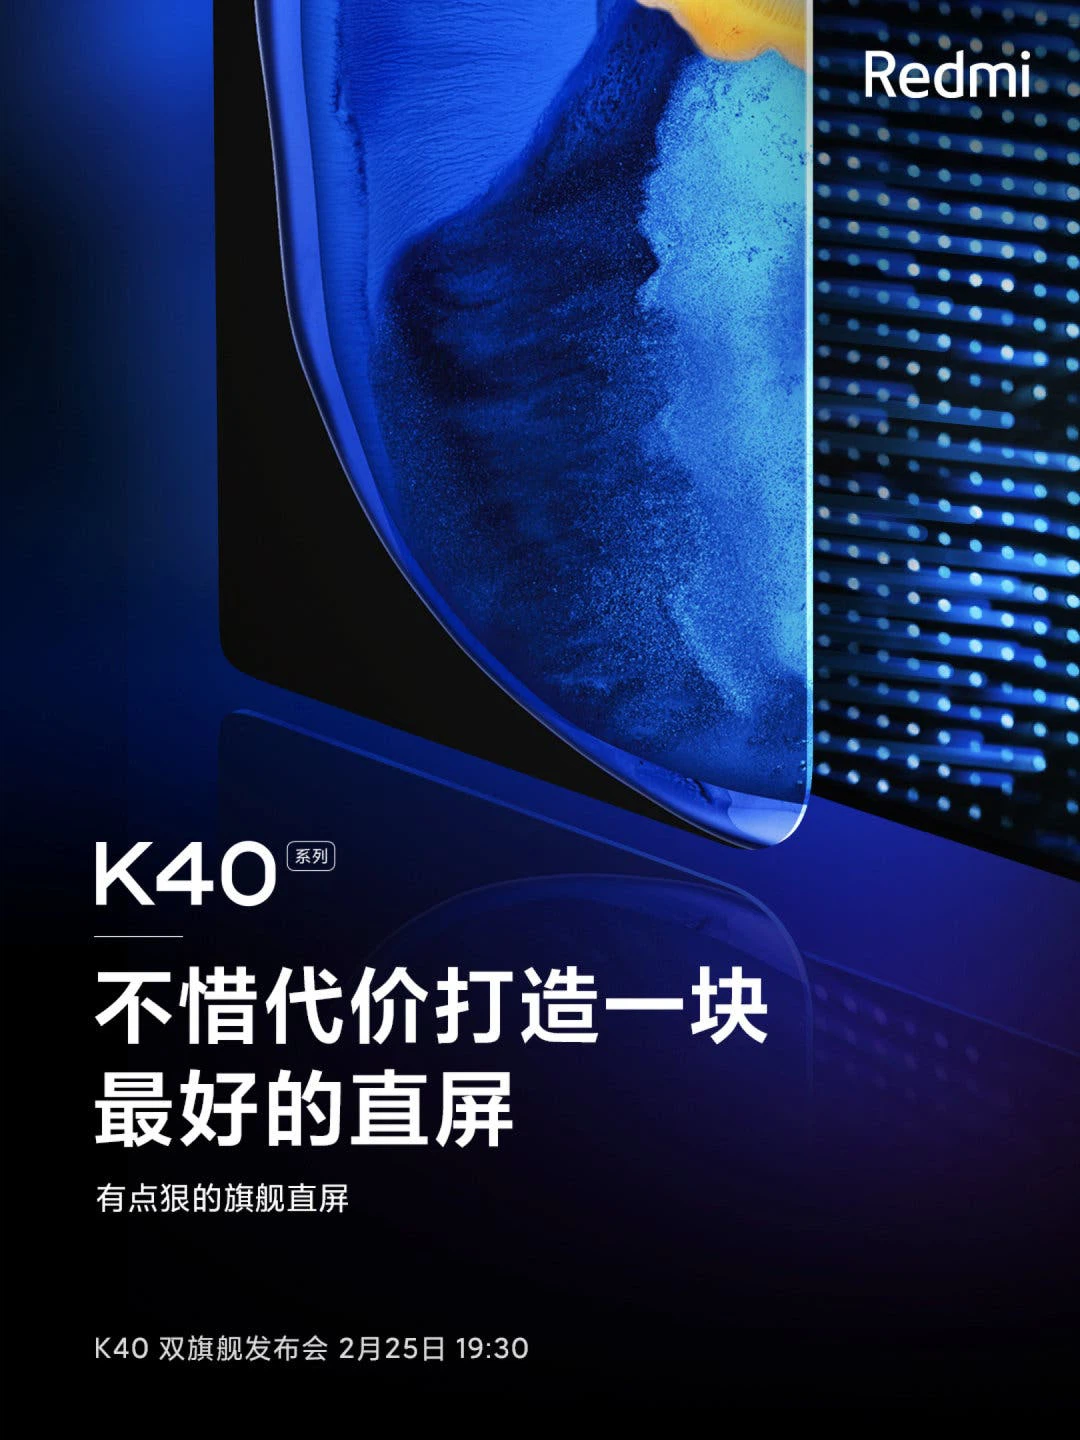 Redmi K40 sẽ sử dụng
công nghệ màn hình OLED như trên Xiaomi Mi 11 và Galaxy S21
Ultra